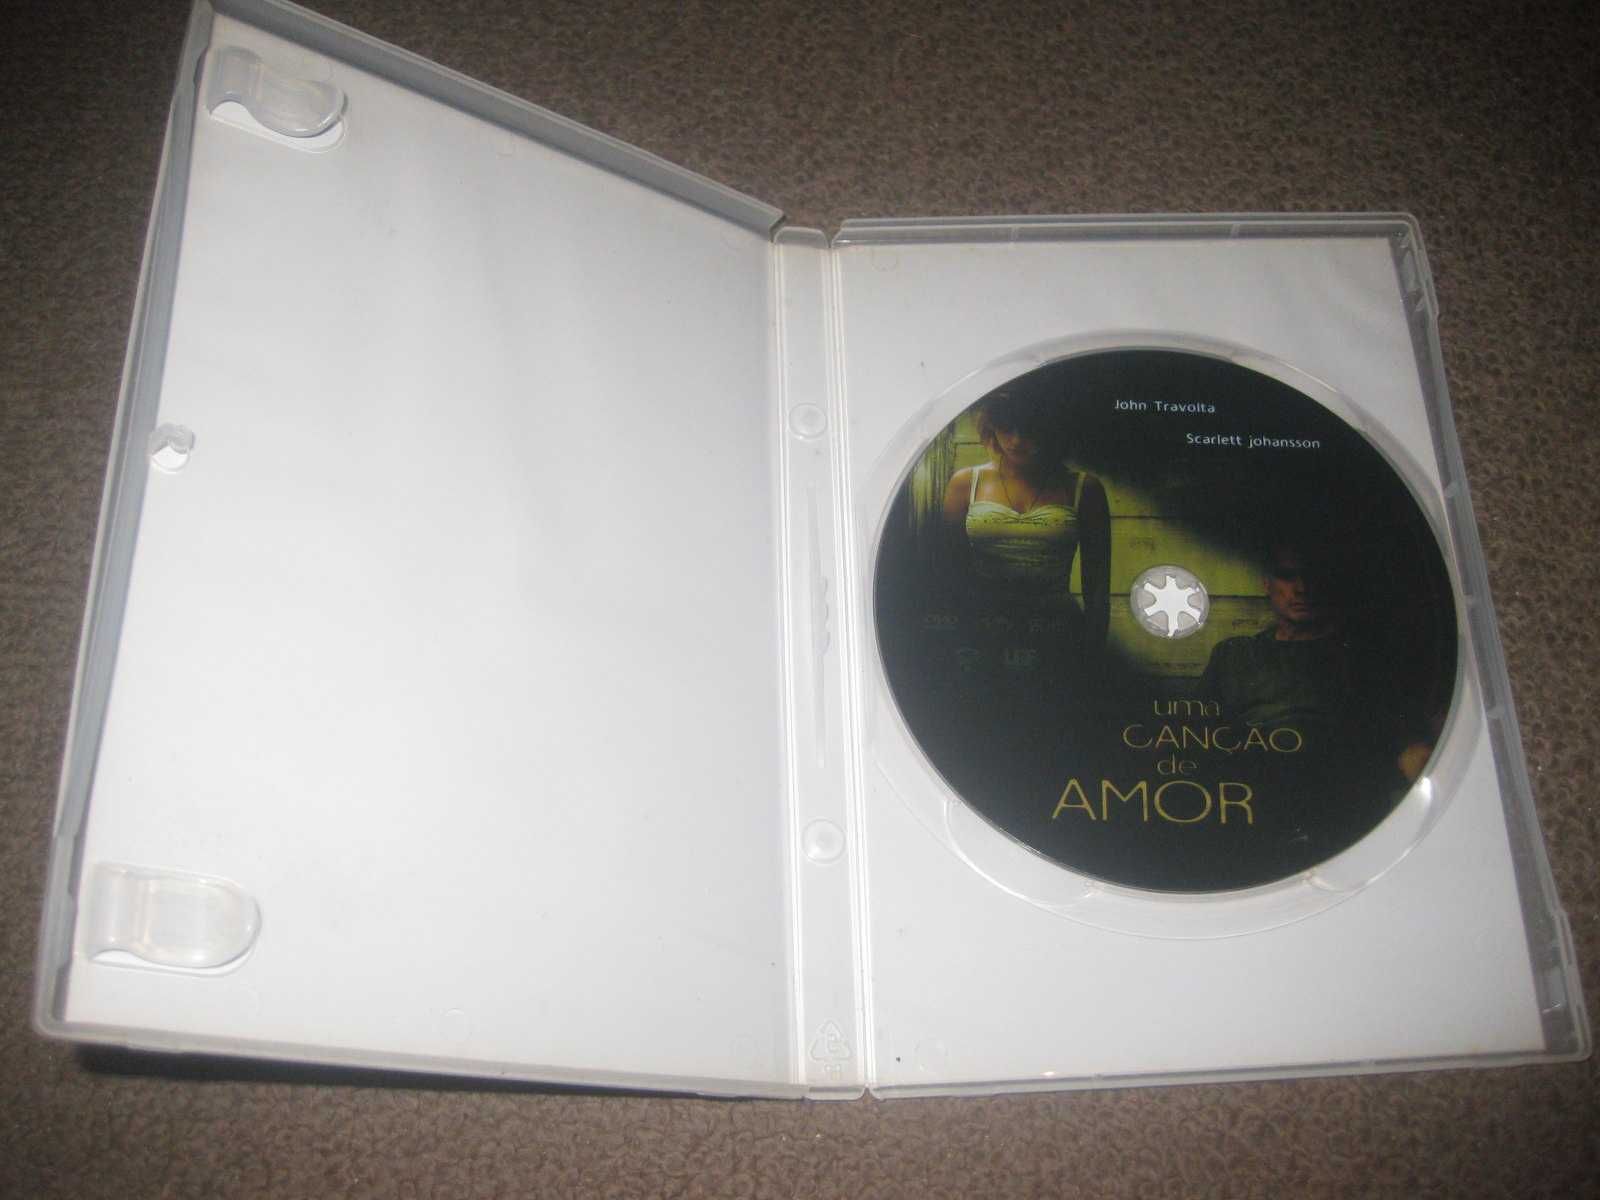 DVD "Uma Canção de Amor" com John Travolta